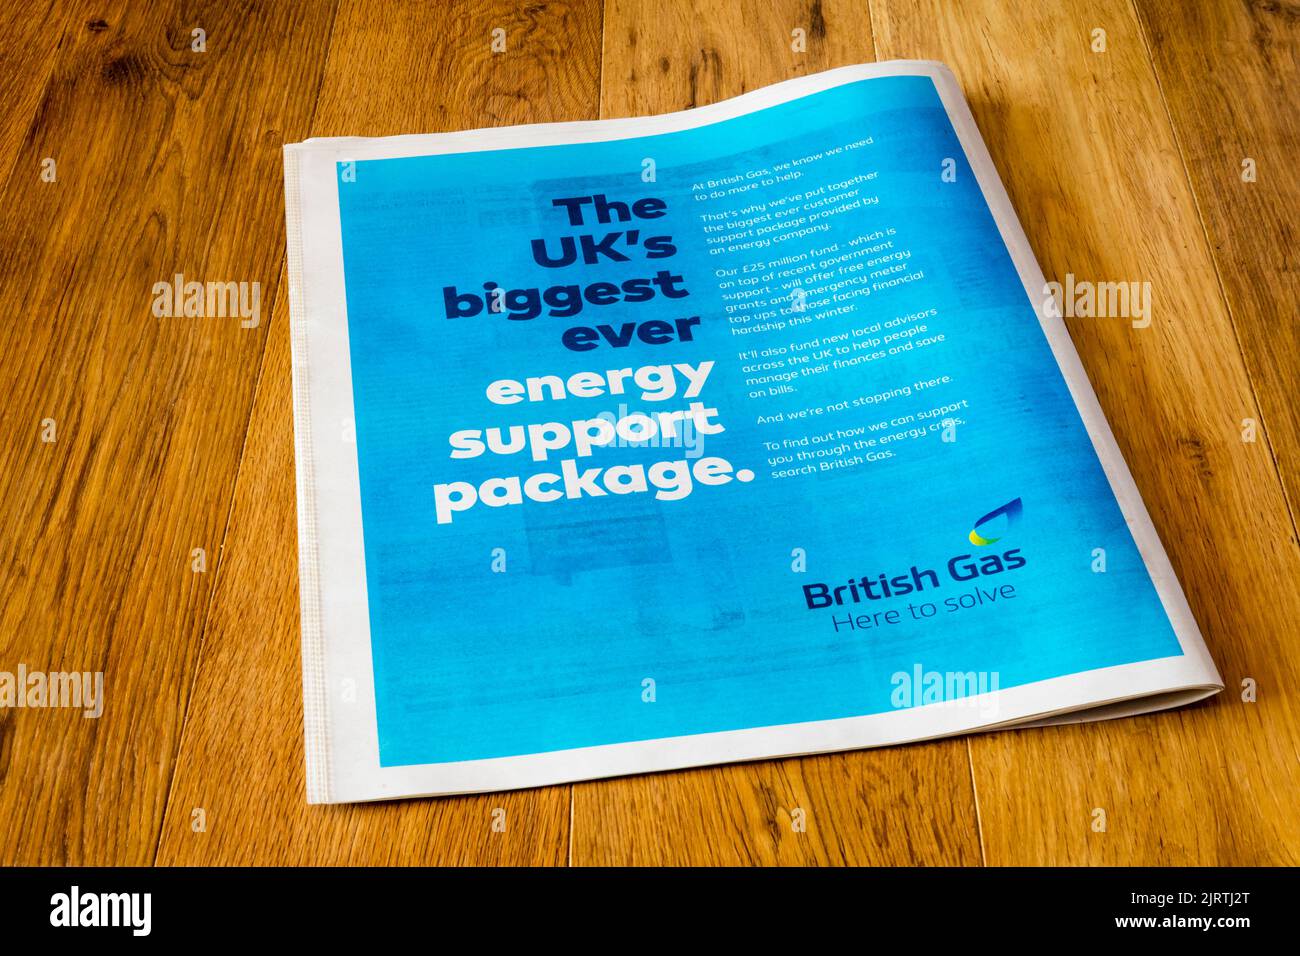 Une publicité de journal pleine page de British Gas faisant la promotion de leur programme de soutien énergétique en réponse à la crise énergétique de 2022. Banque D'Images